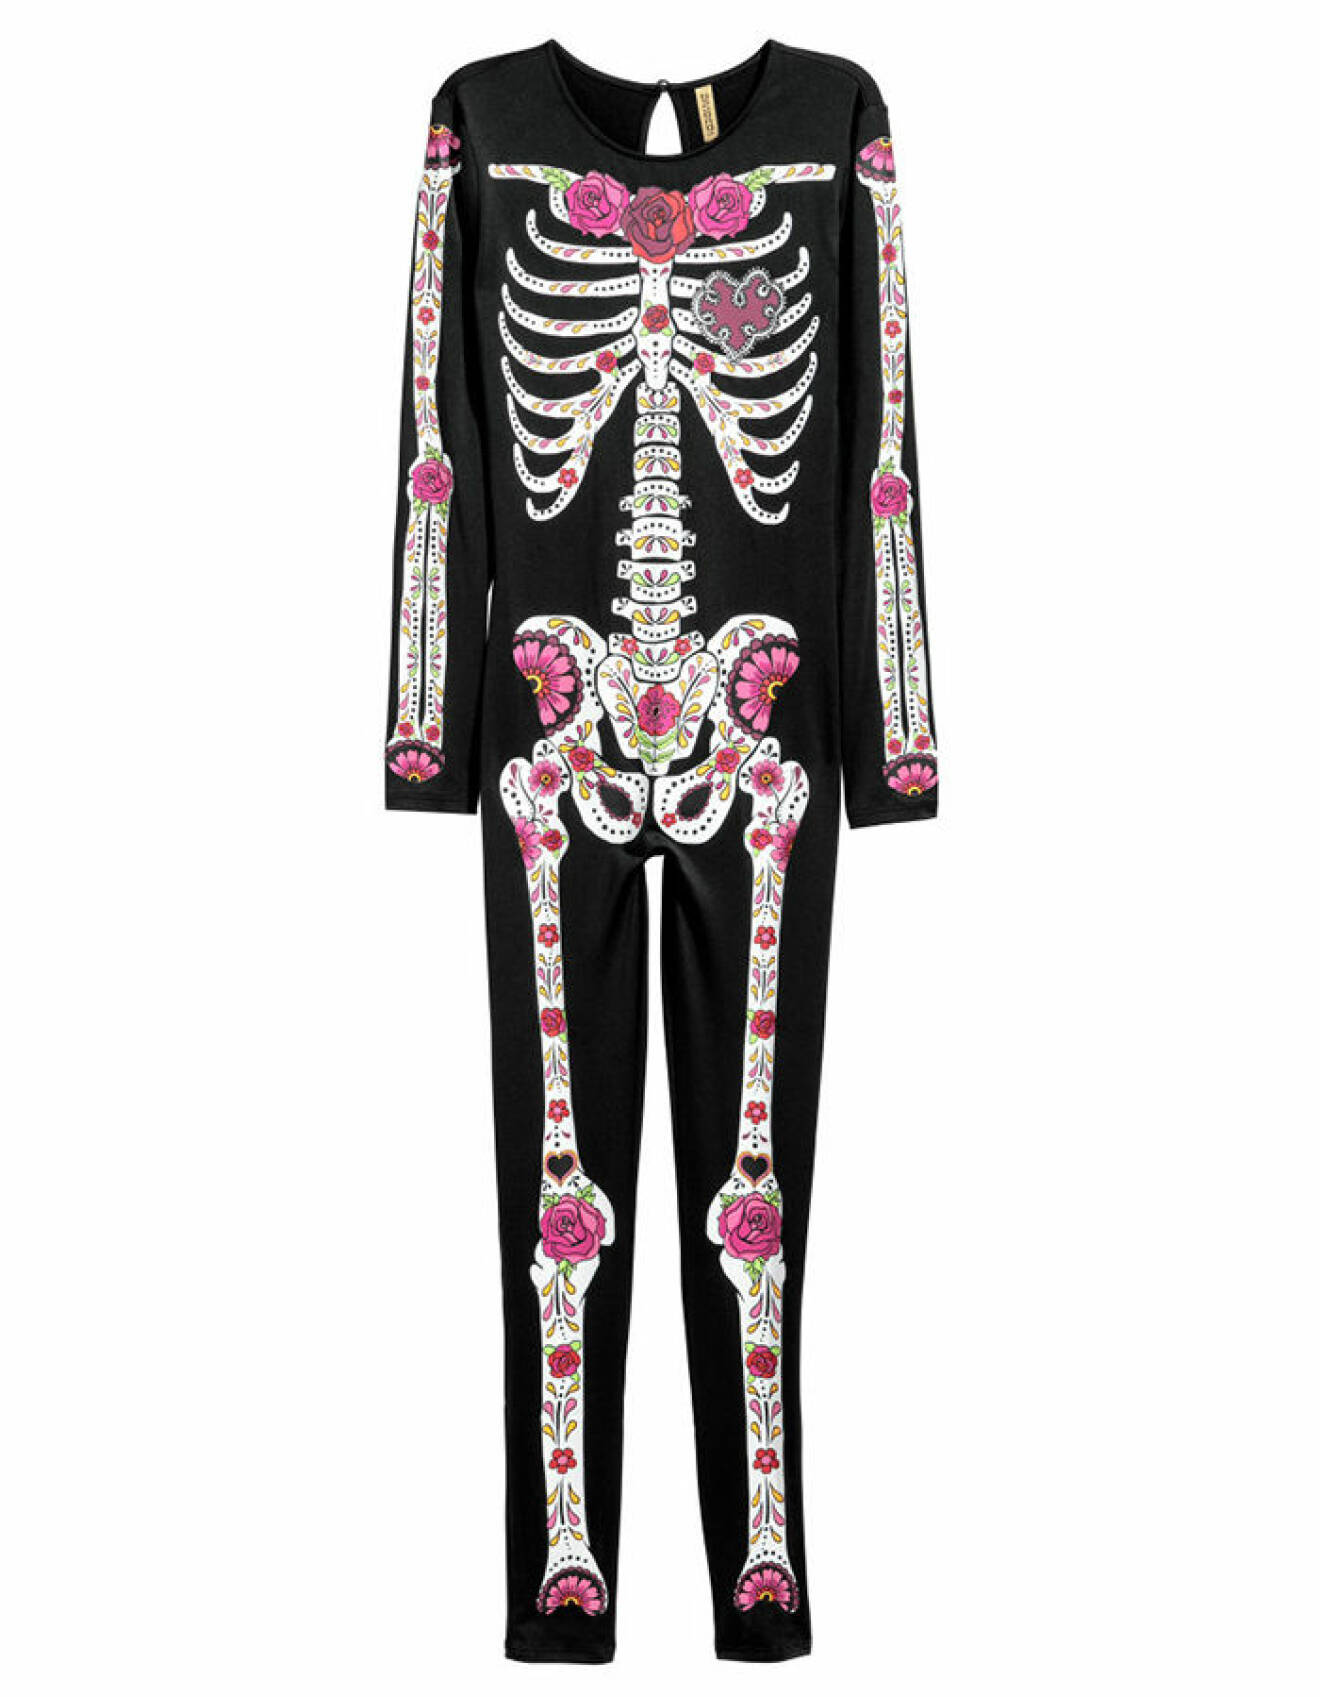 Halloweenkonstym från H&M föreställande ett skelett med mexikanskt mönster och rosor.